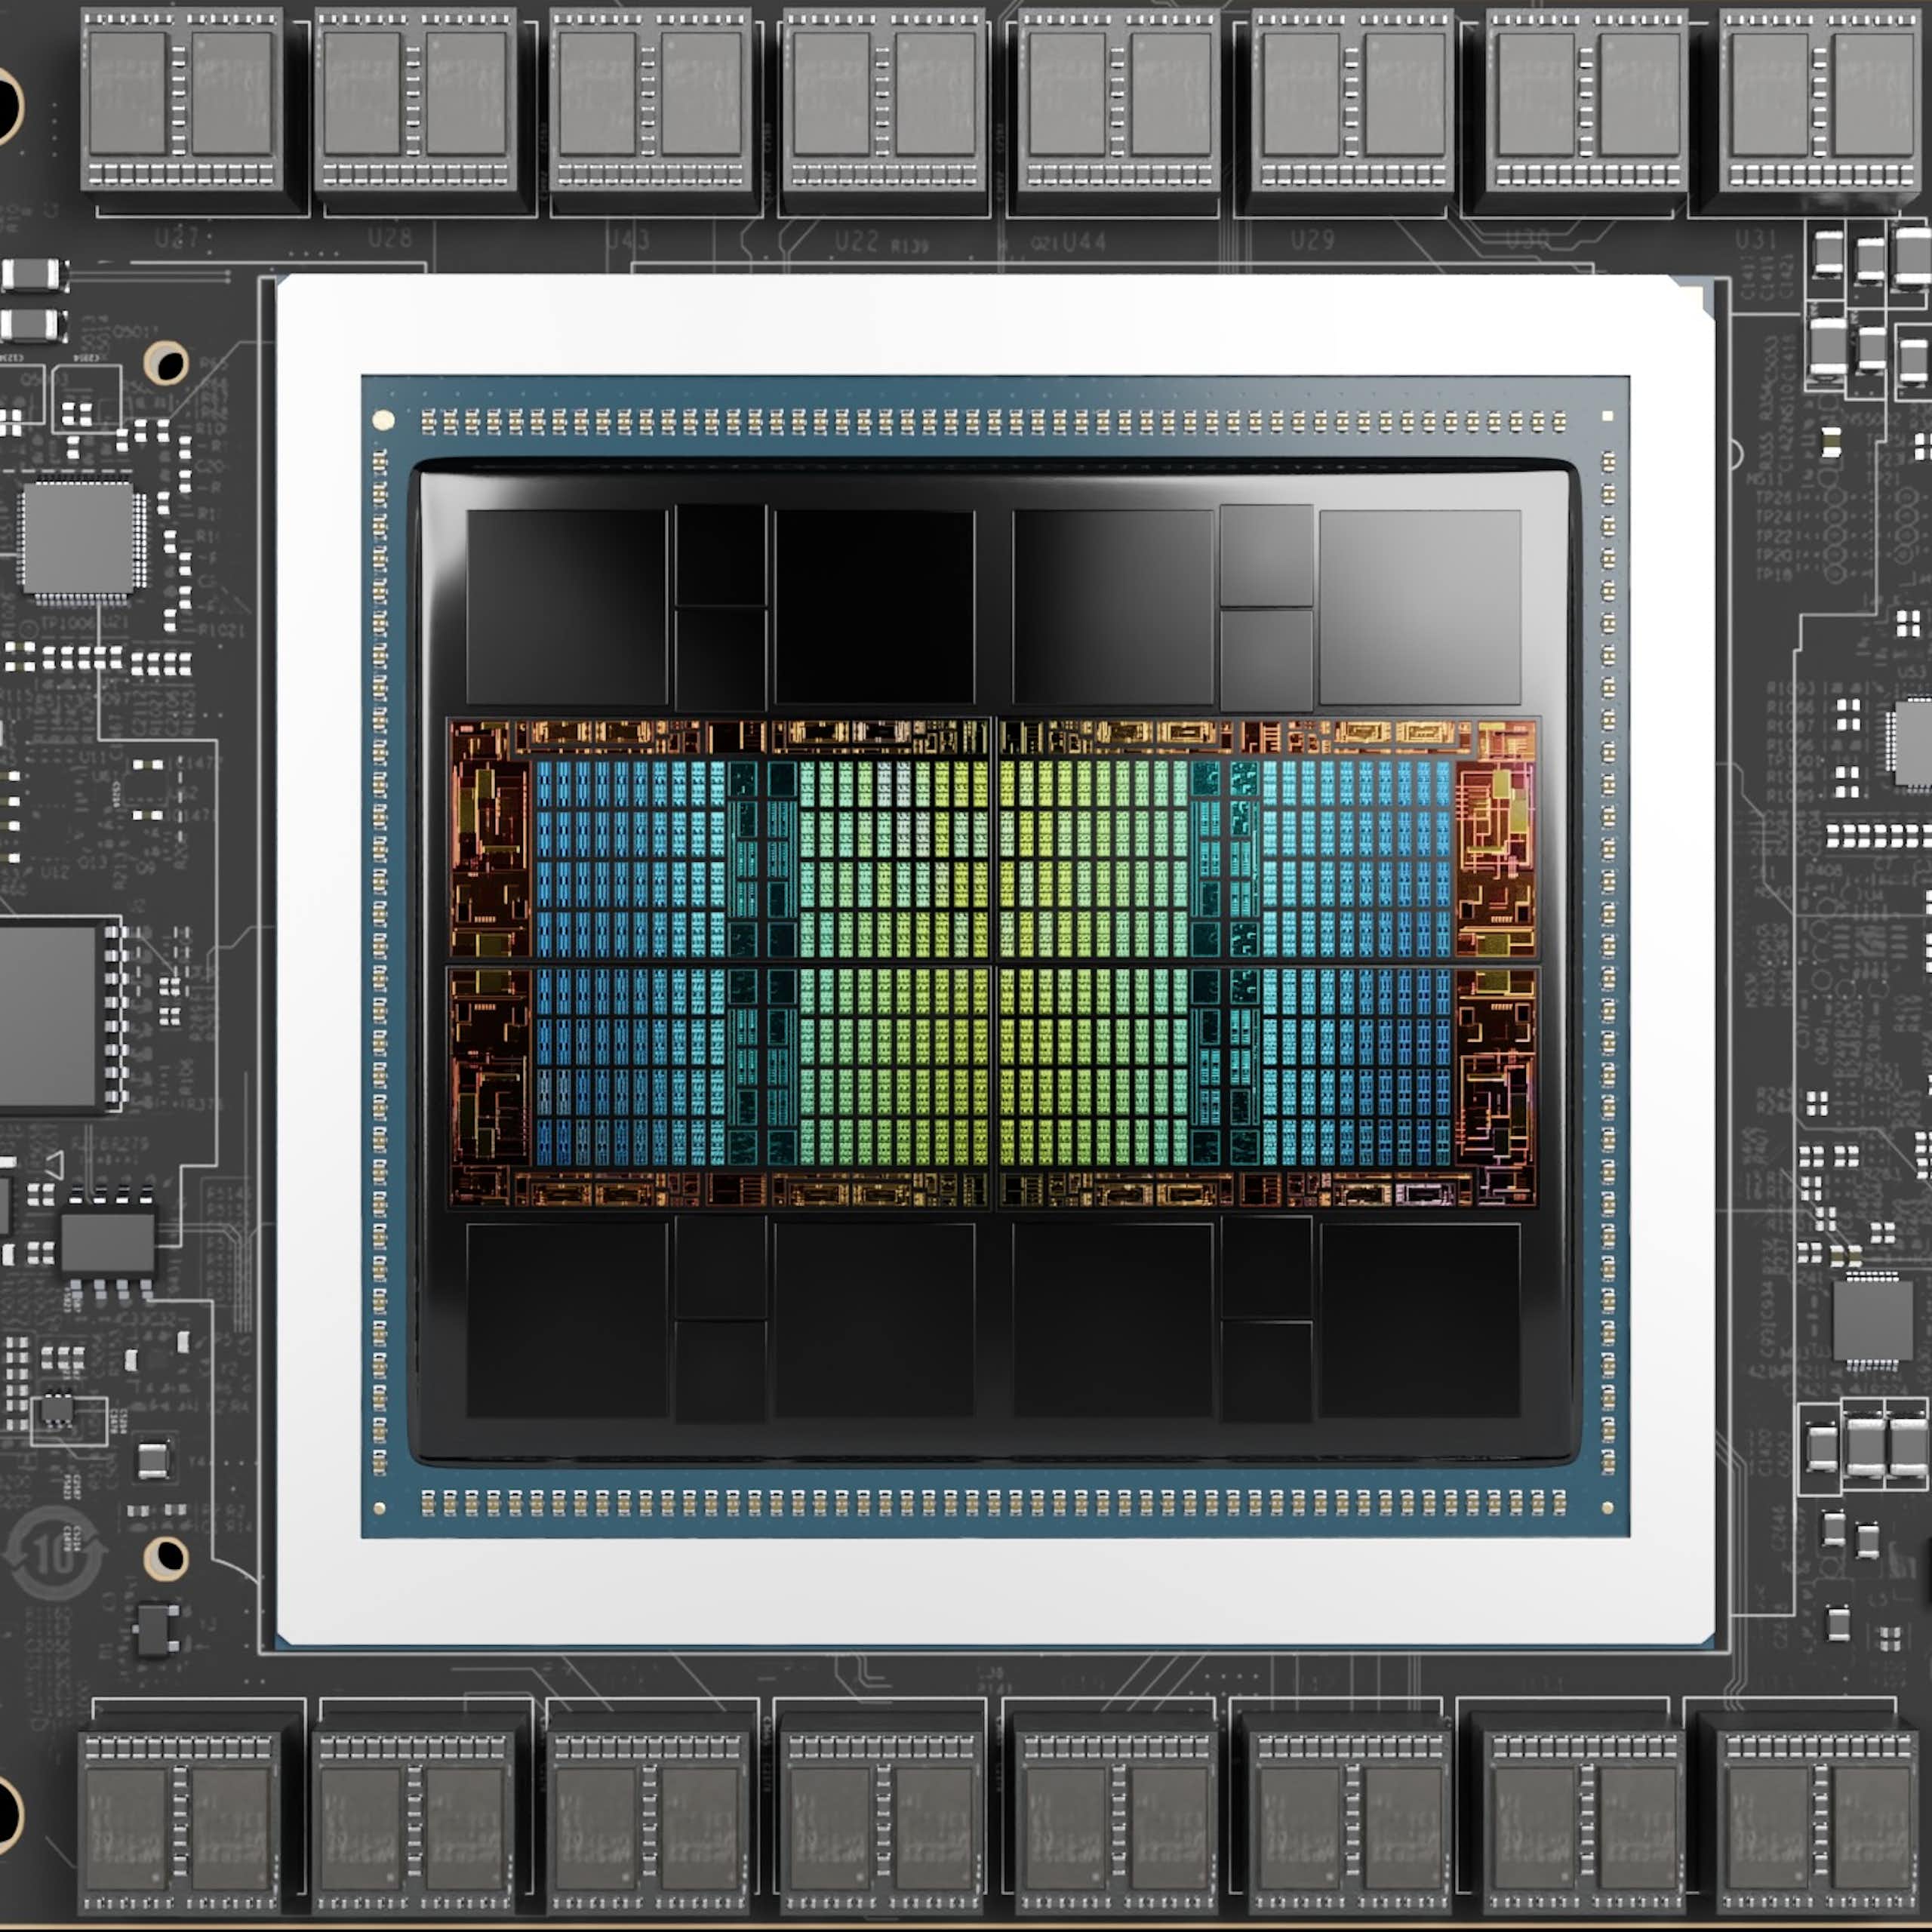 A photo of an iridescent computer chip.